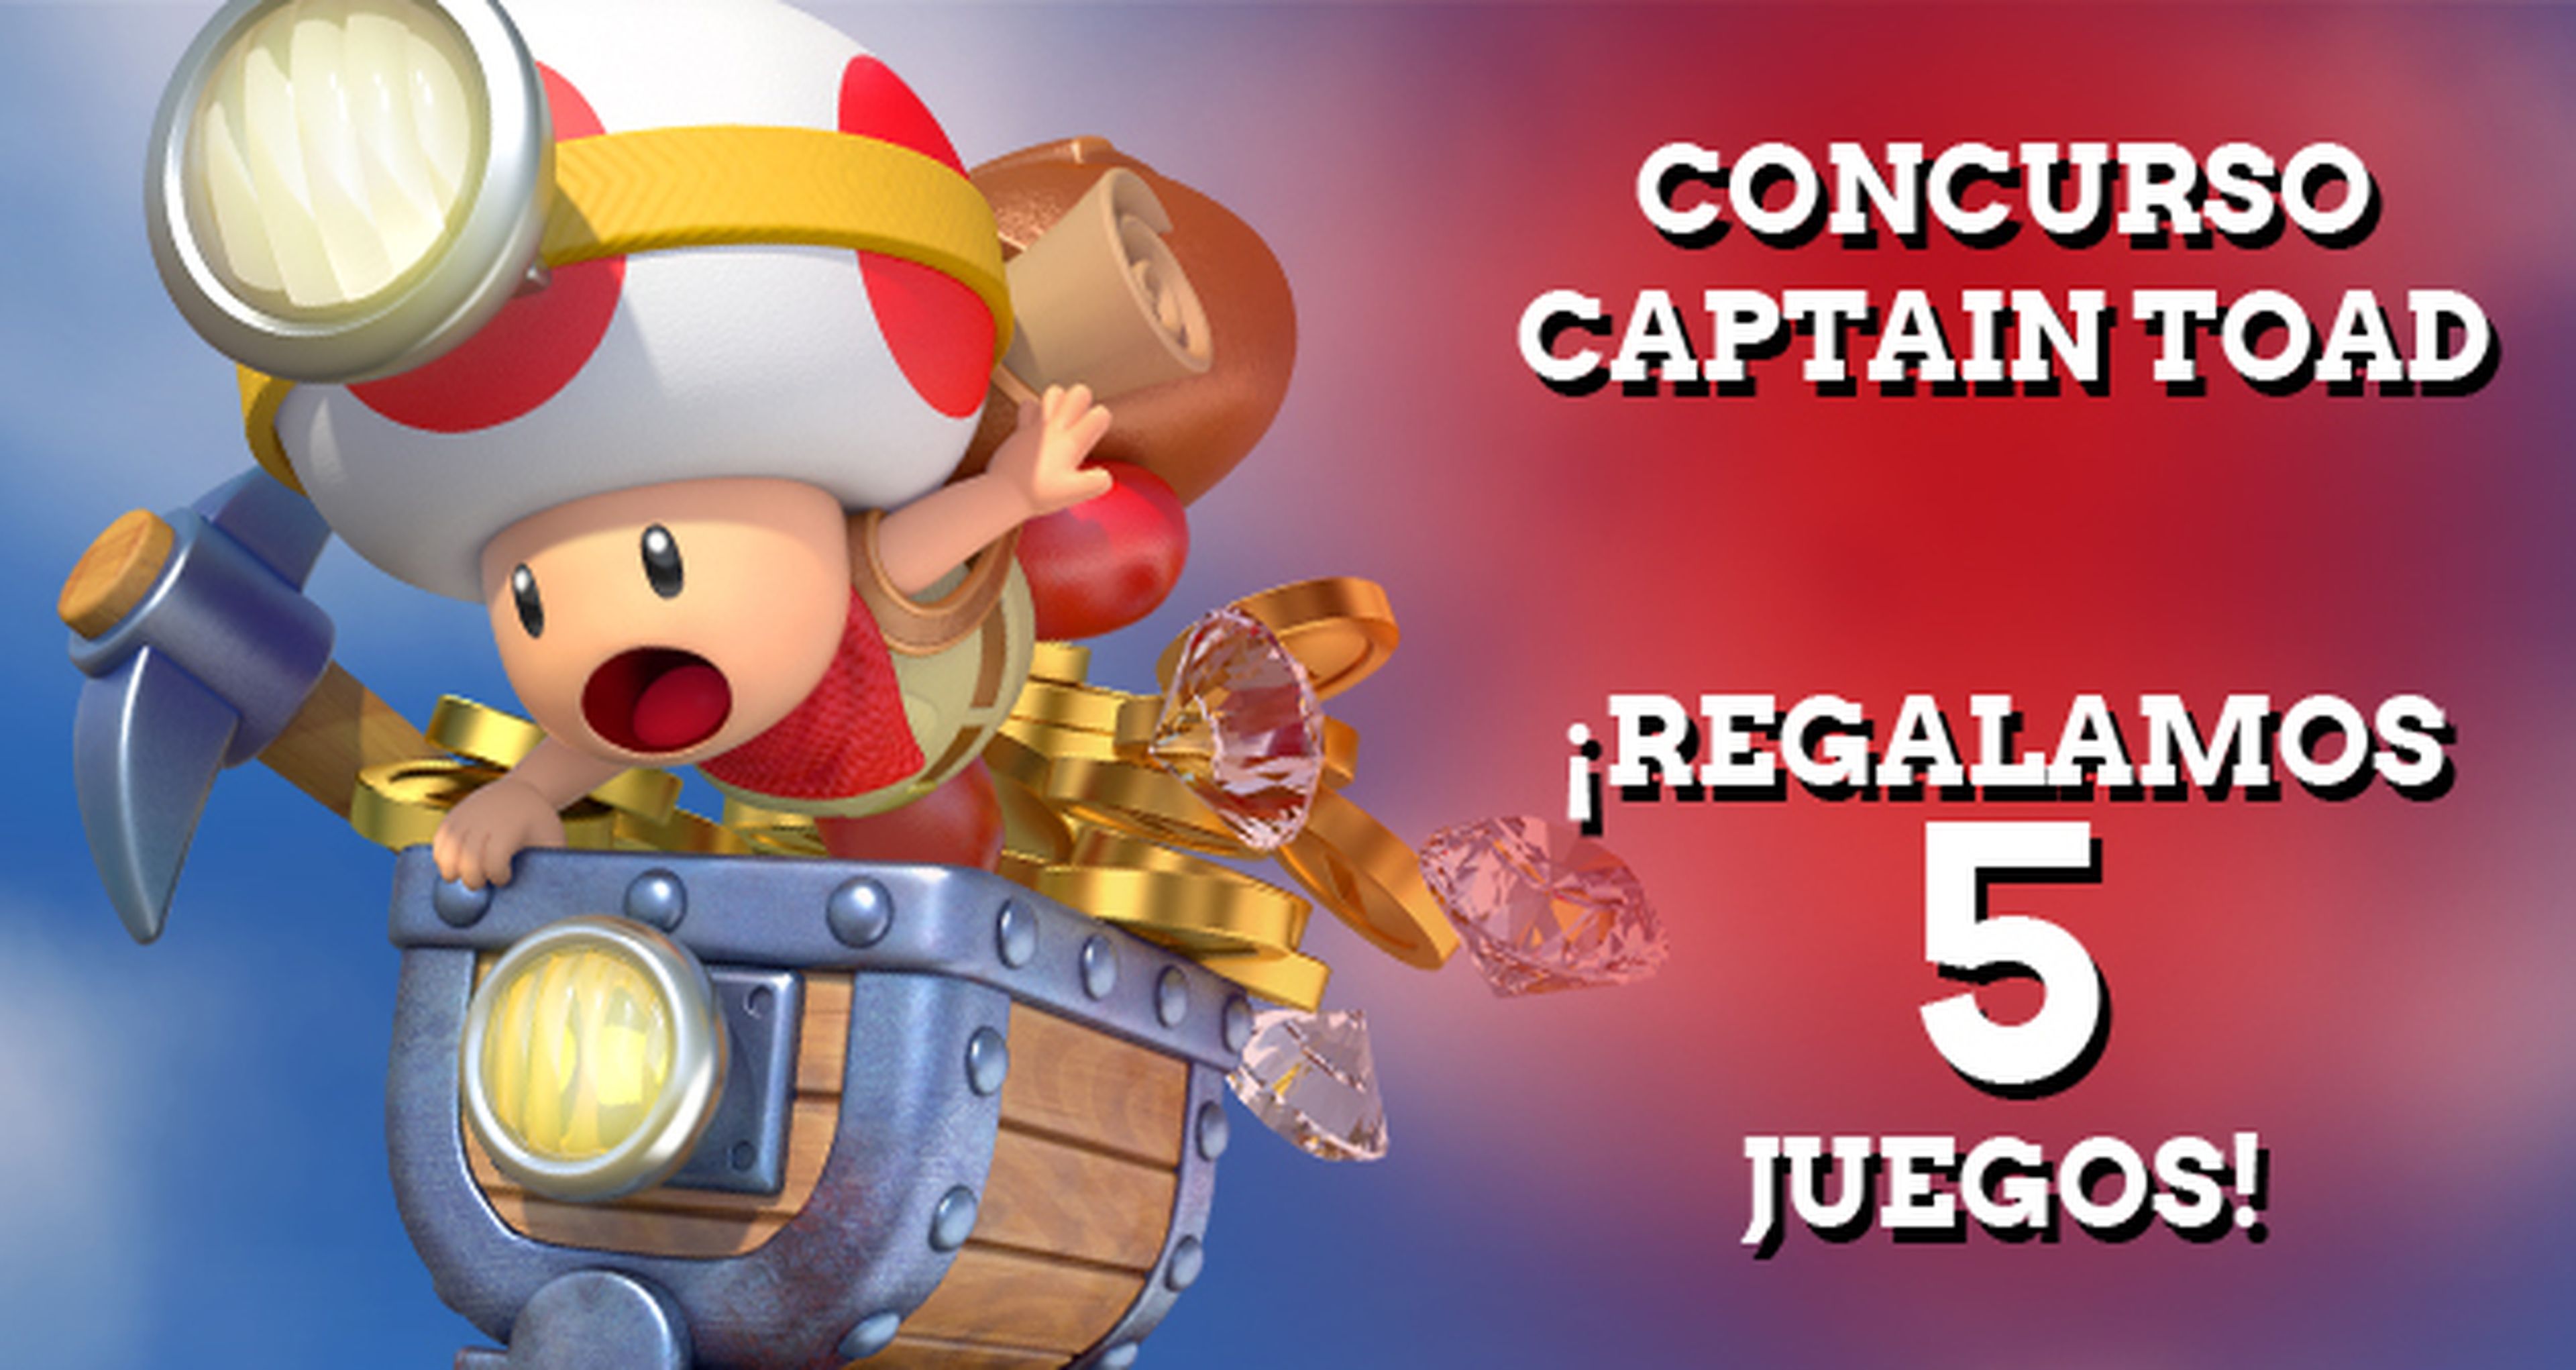 Concurso Captain Toad: ¡Ganadores!